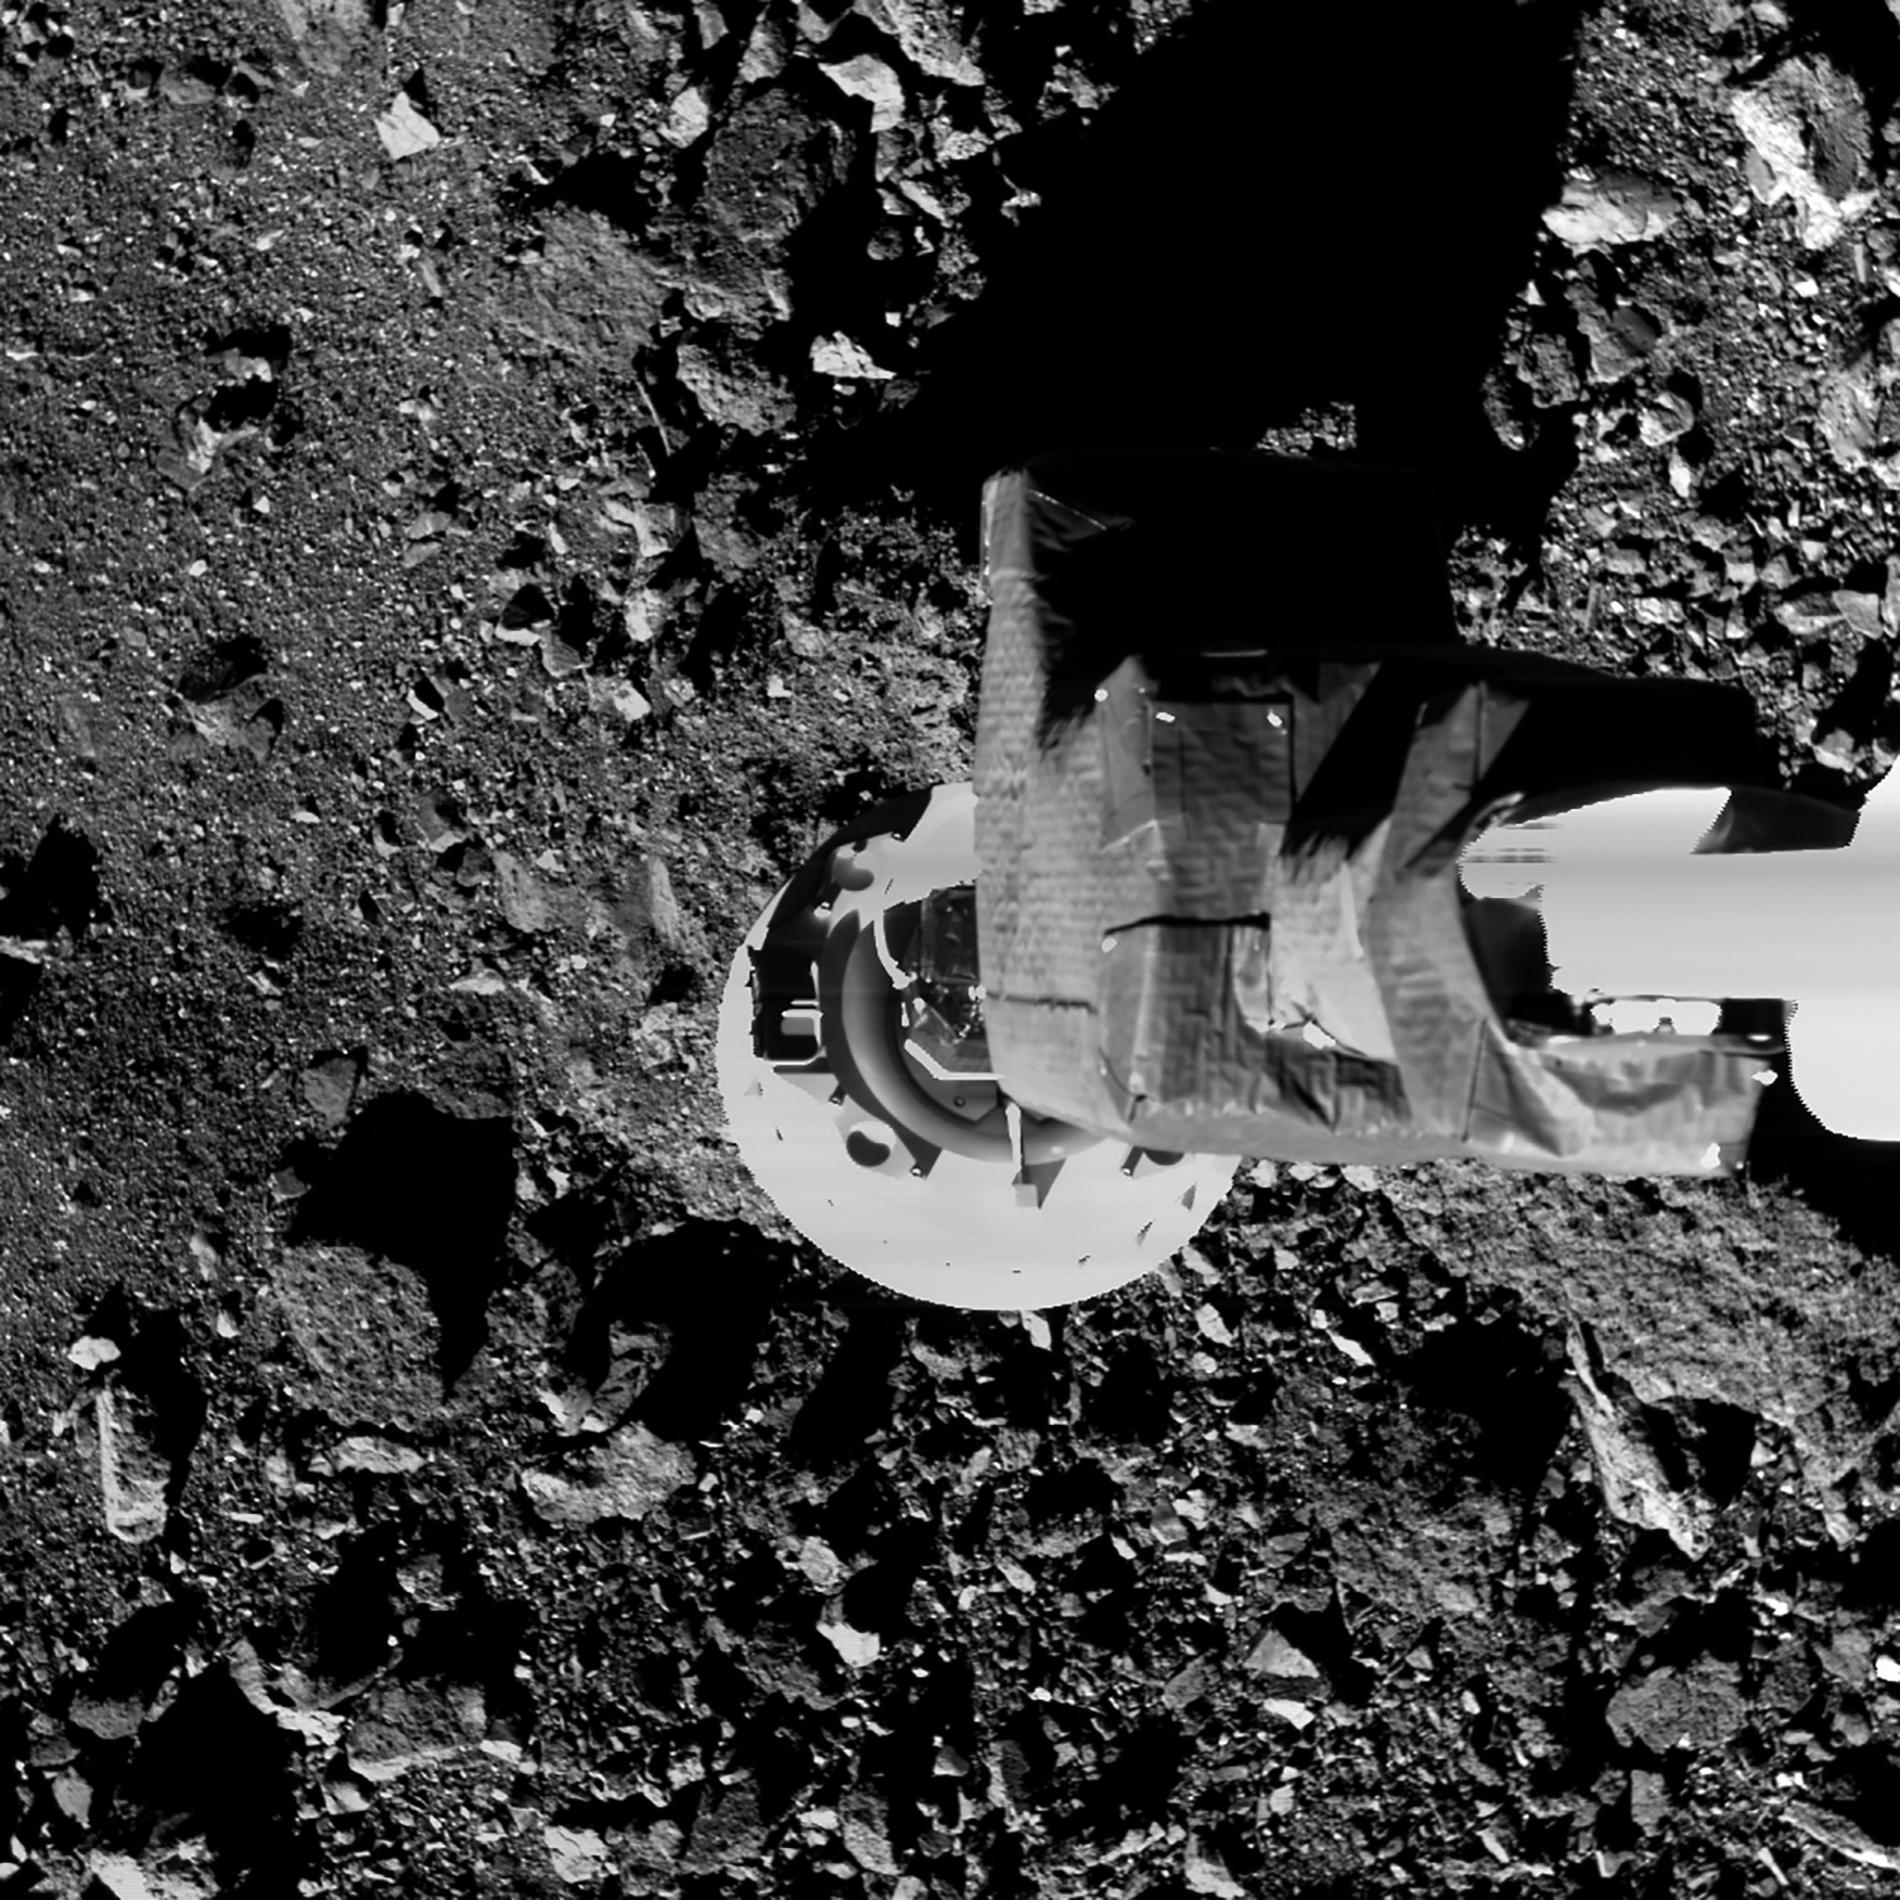 在一次測試中，歐西里斯號探測器的採樣臂降落在靠近貝努表面之處。「一觸即走」的採樣目標是鑽探並收集至少數10克至2公斤的樣本。PHOTOGRAPH BY NASA/GODDARD/UNIVERSITY OF ARIZONA 